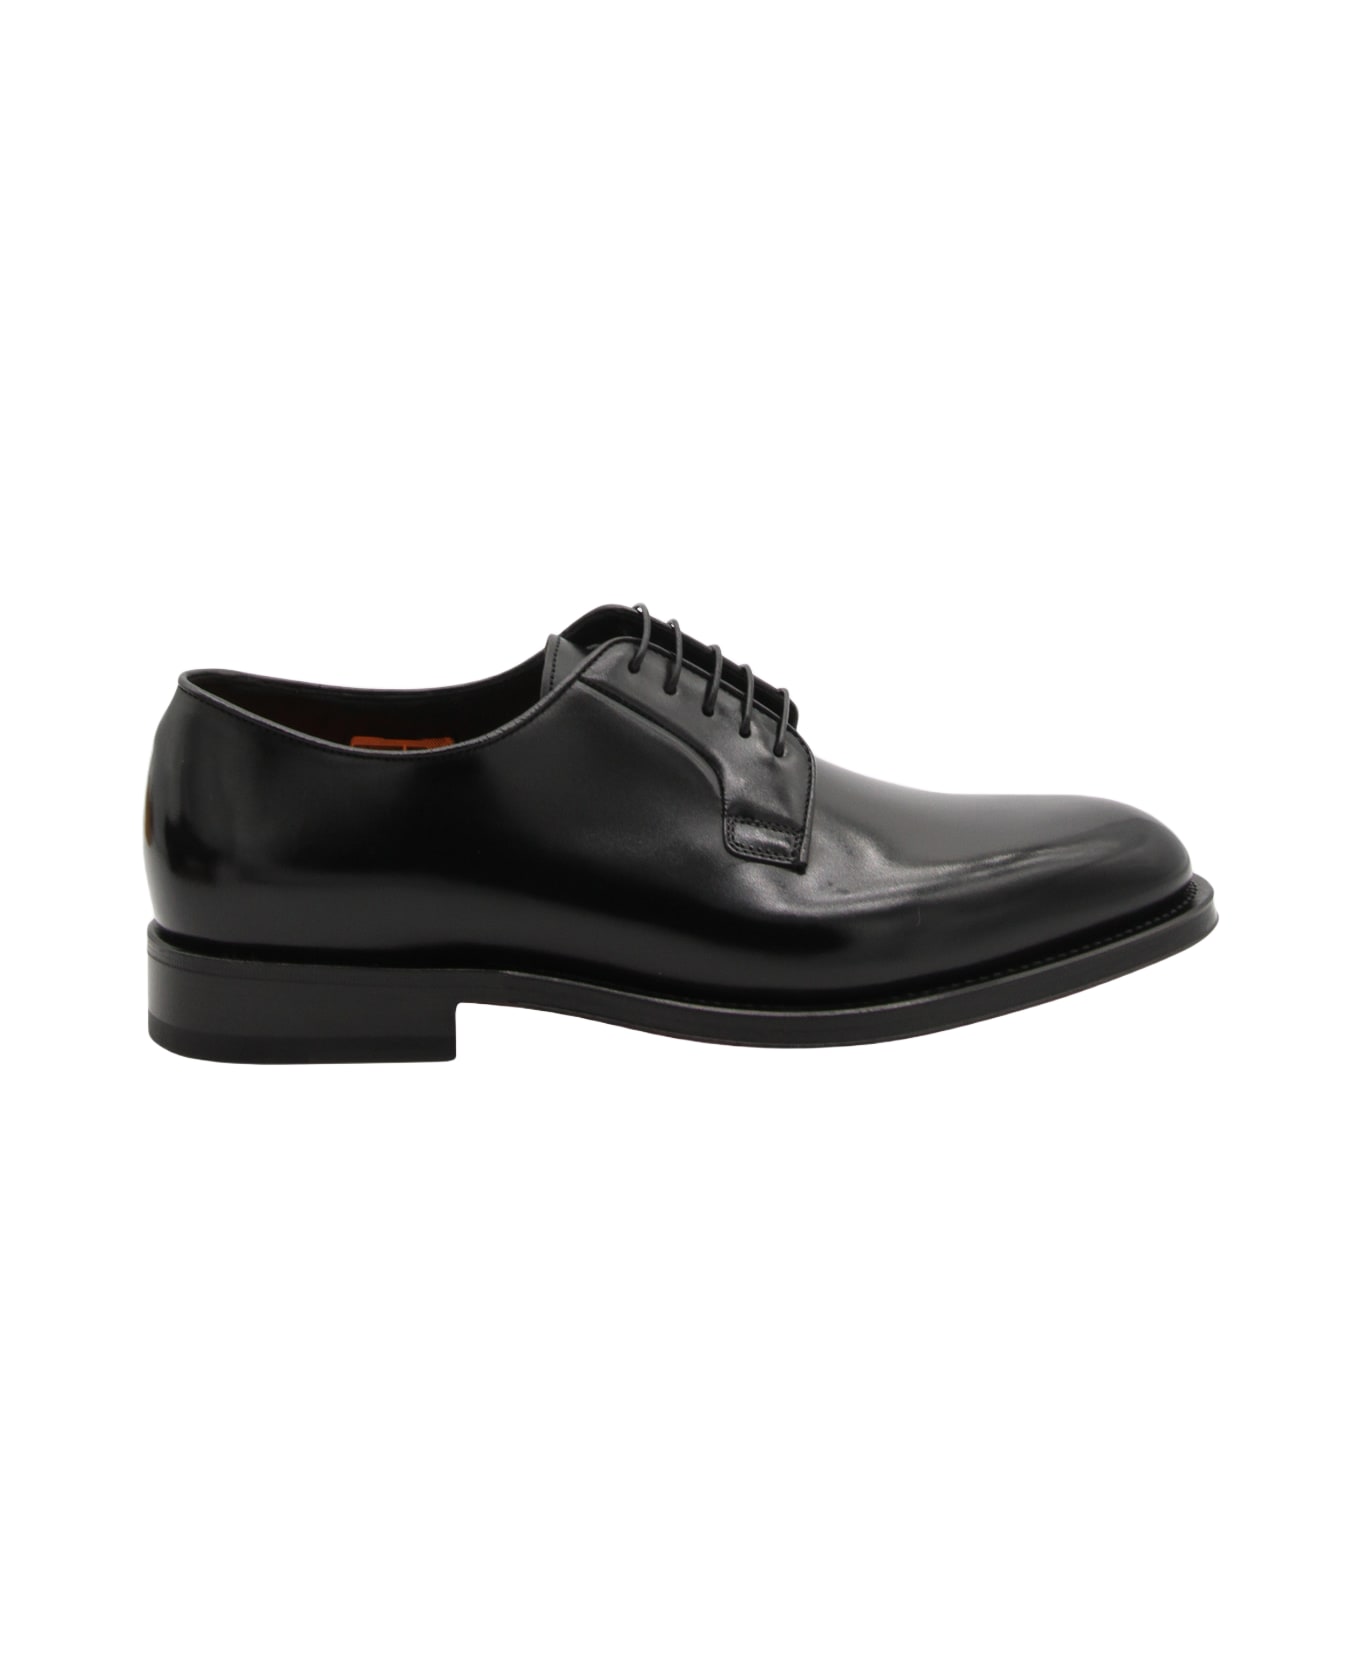 Santoni Black Leather Lace Up Shoes - Black